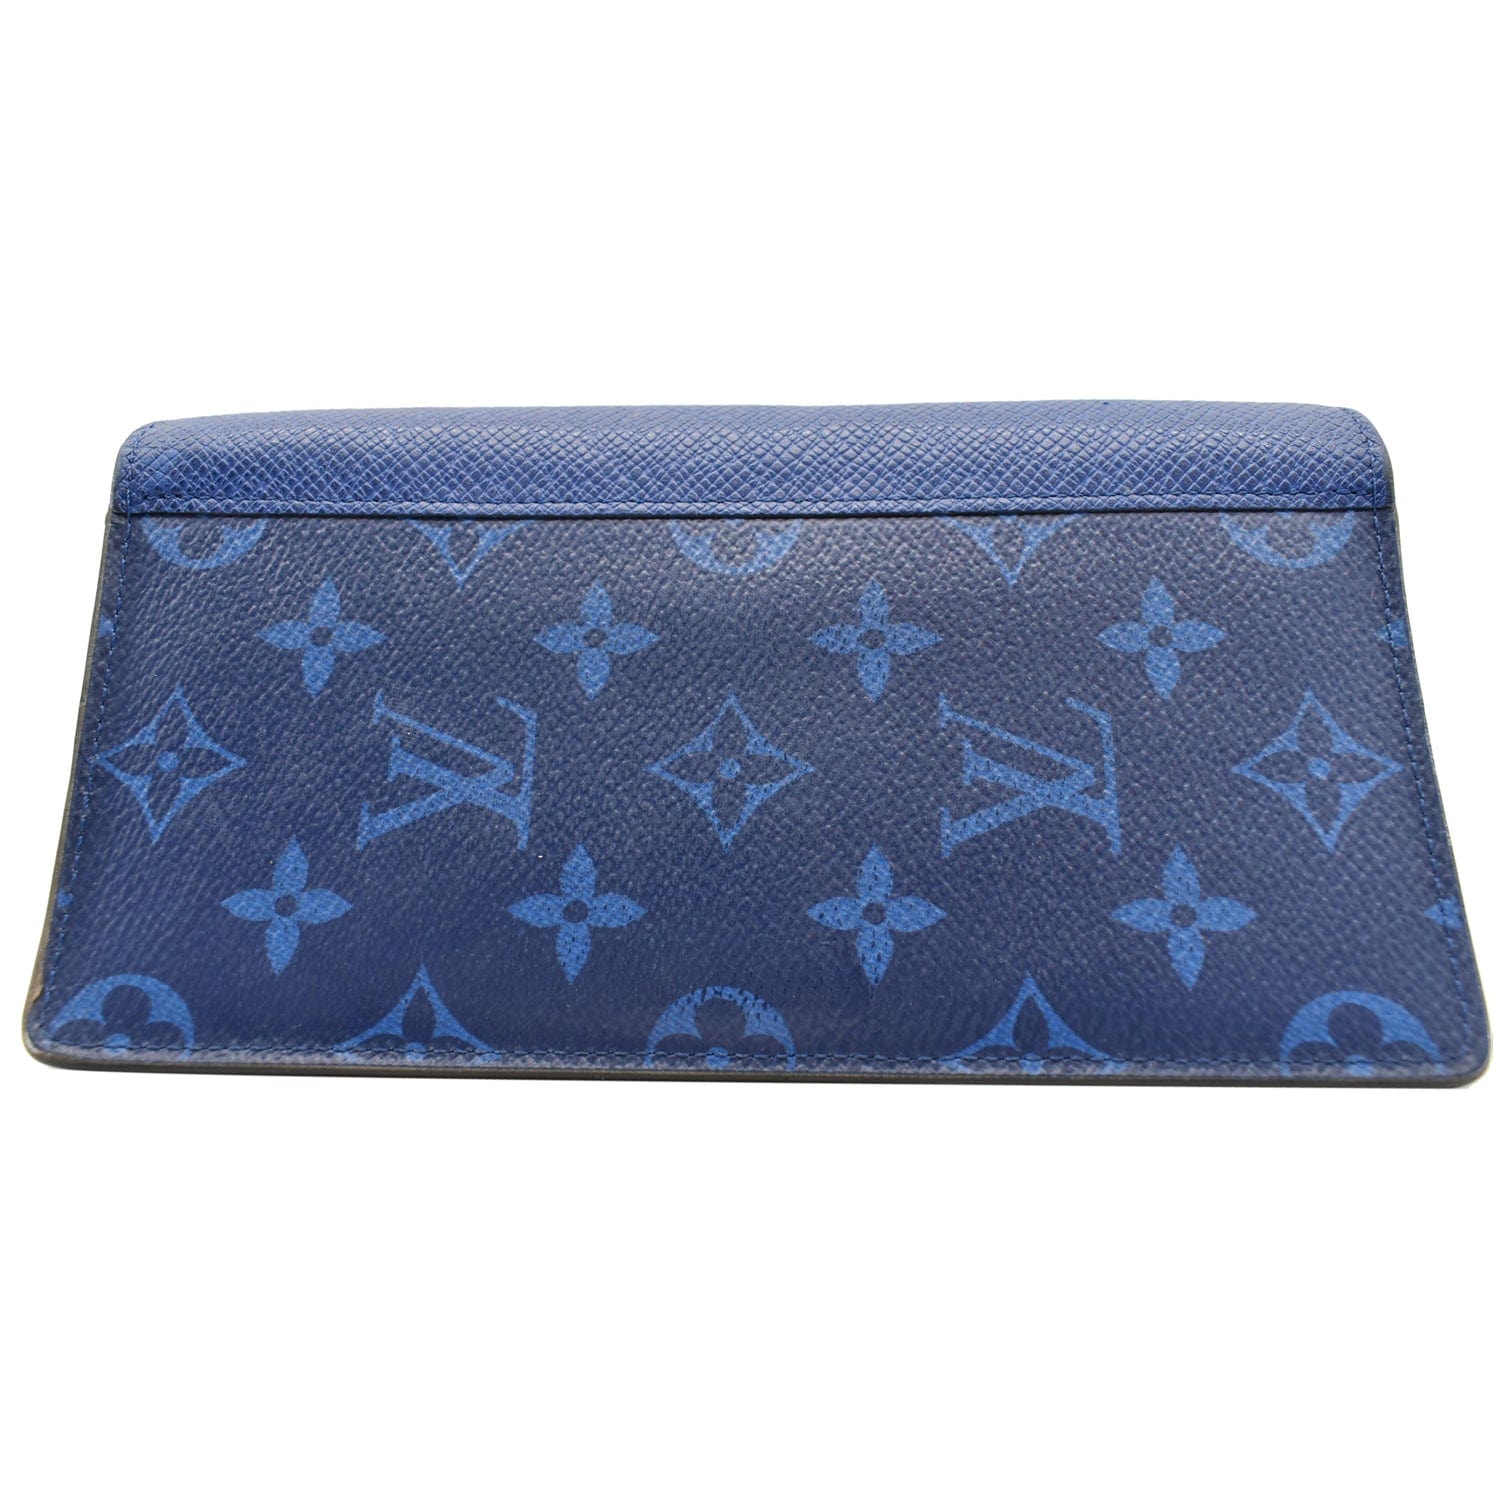 louis-vuitton womens wallet blue